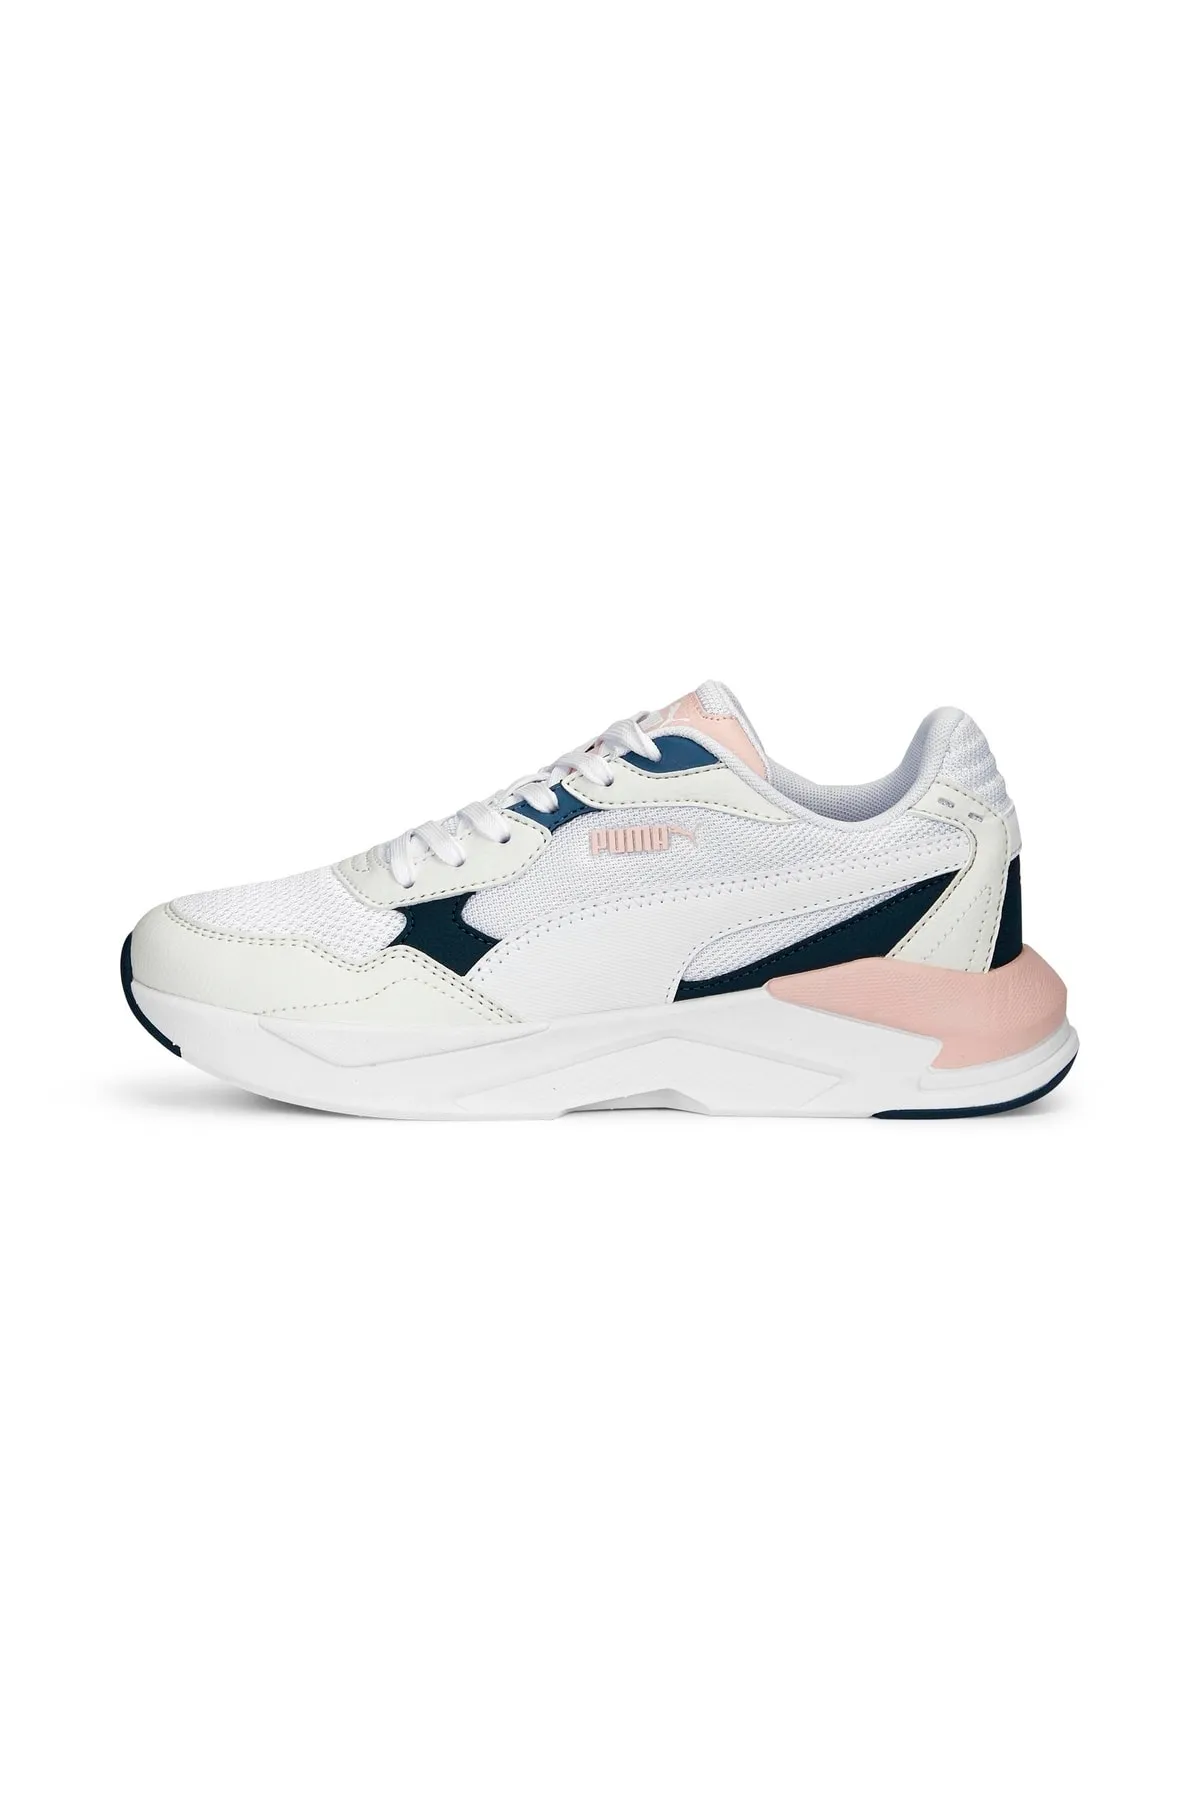 X-Ray Speed Lite - Kadın Sneaker Ayakkabı 384639 -Beyaz